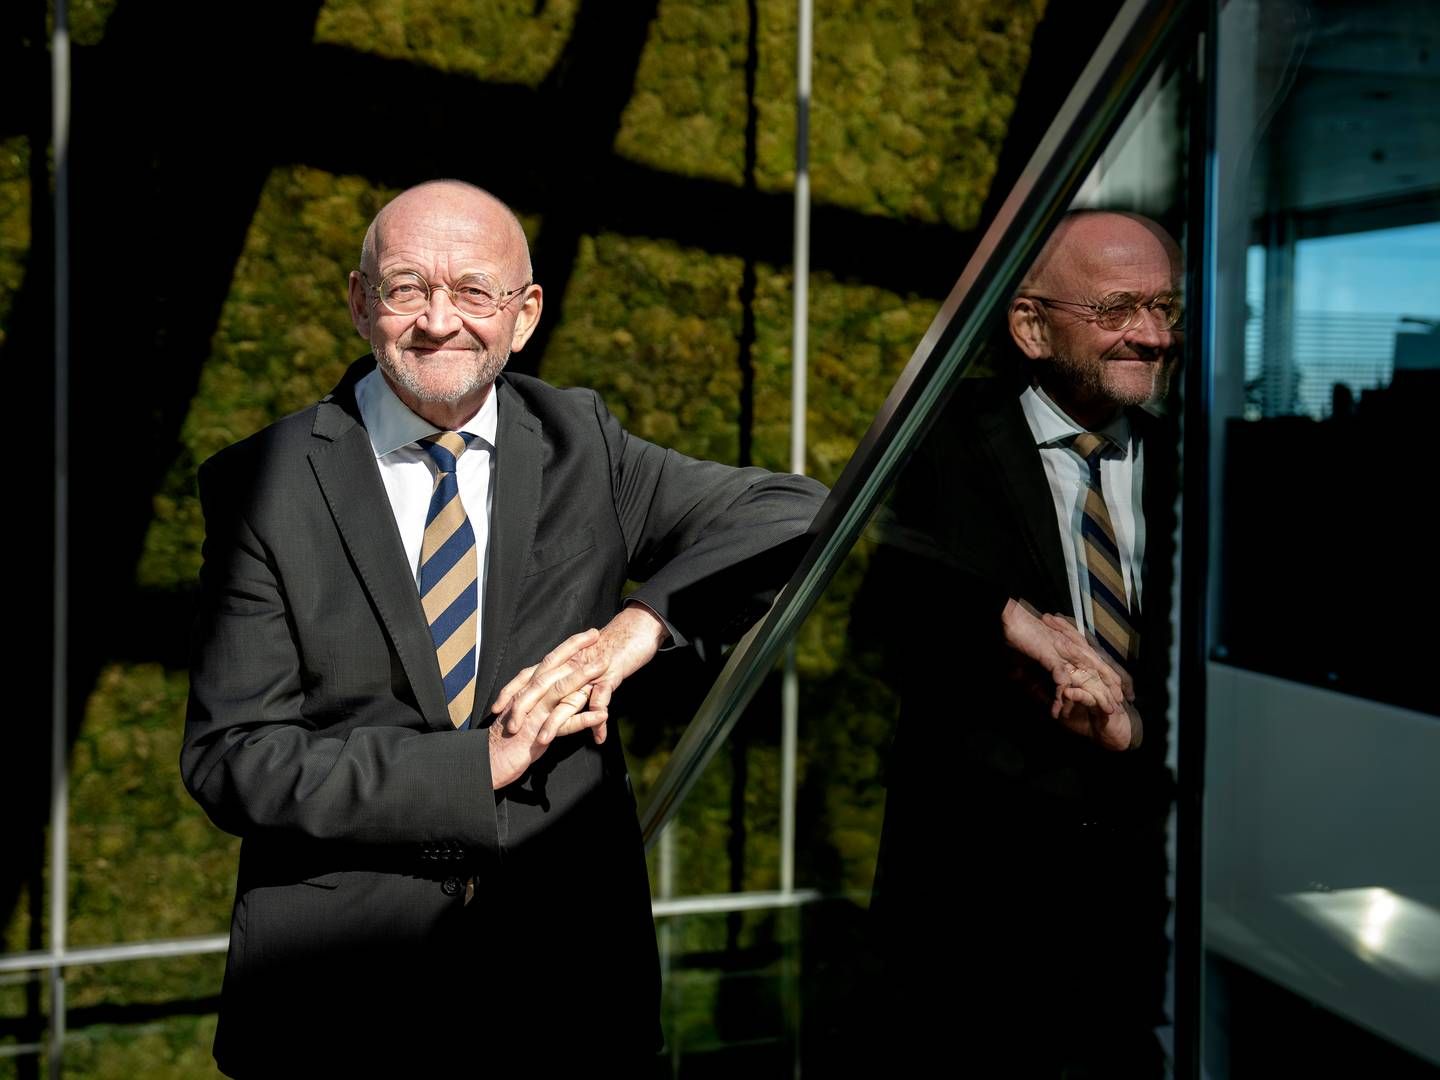 Torben Möger Pedersen will be resigning as CEO of PensionDanmark on October 1. | Photo: Stine Bidstrup